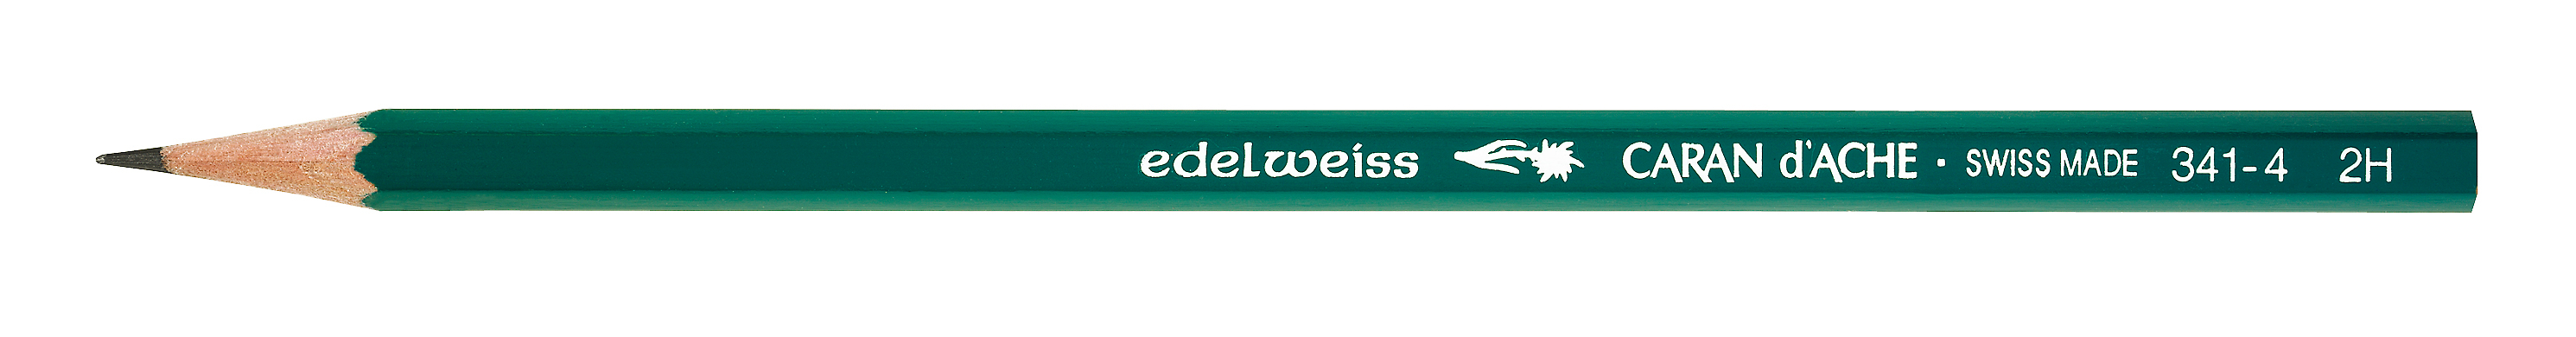 CARAN D'ACHE Crayon Ecolier Edelweiss 2H 341.274 vert